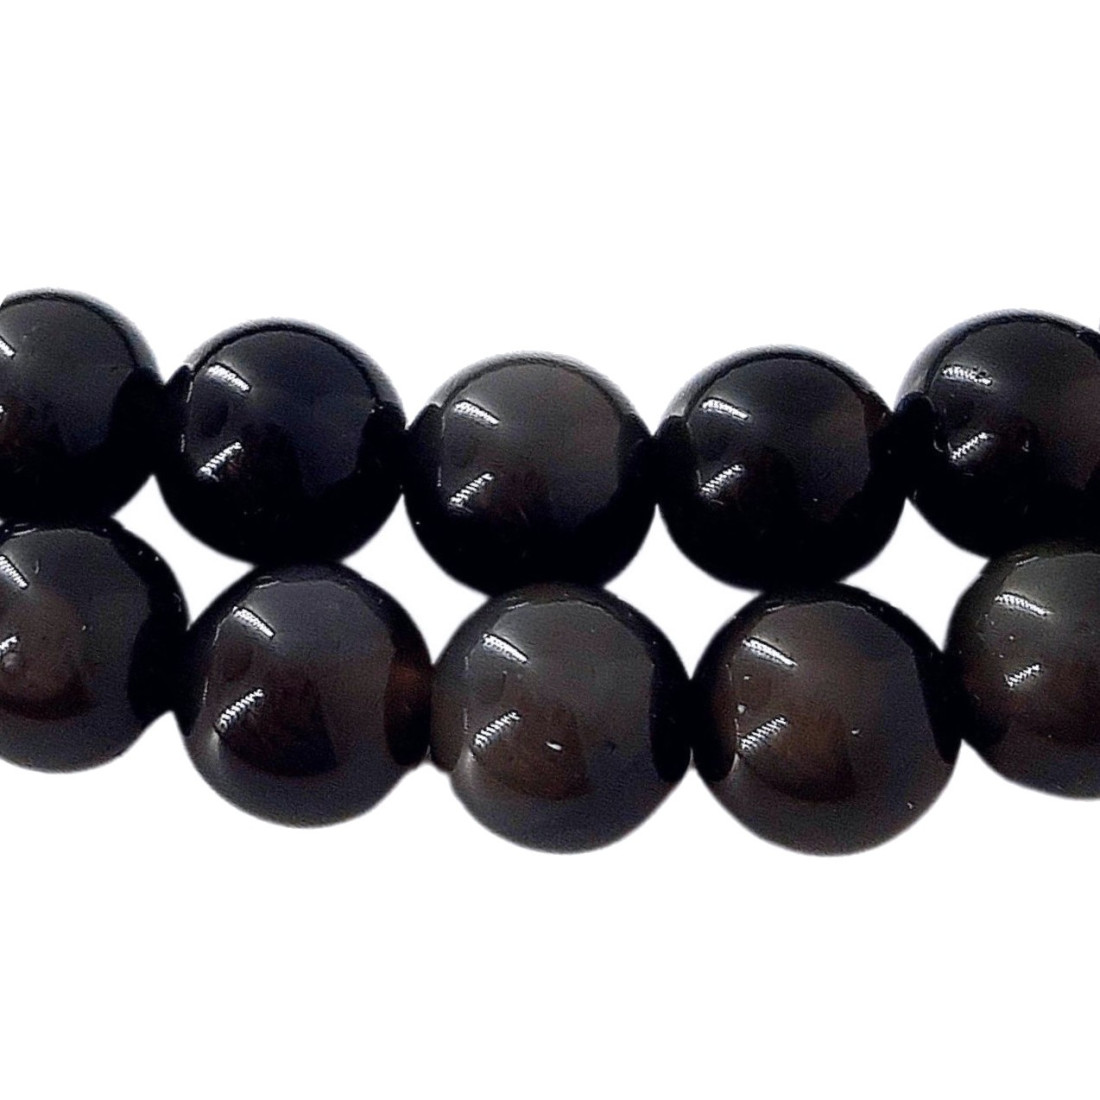 Fil de 62 perles rondes 6mm 6 mm en obsidienne noire argentée